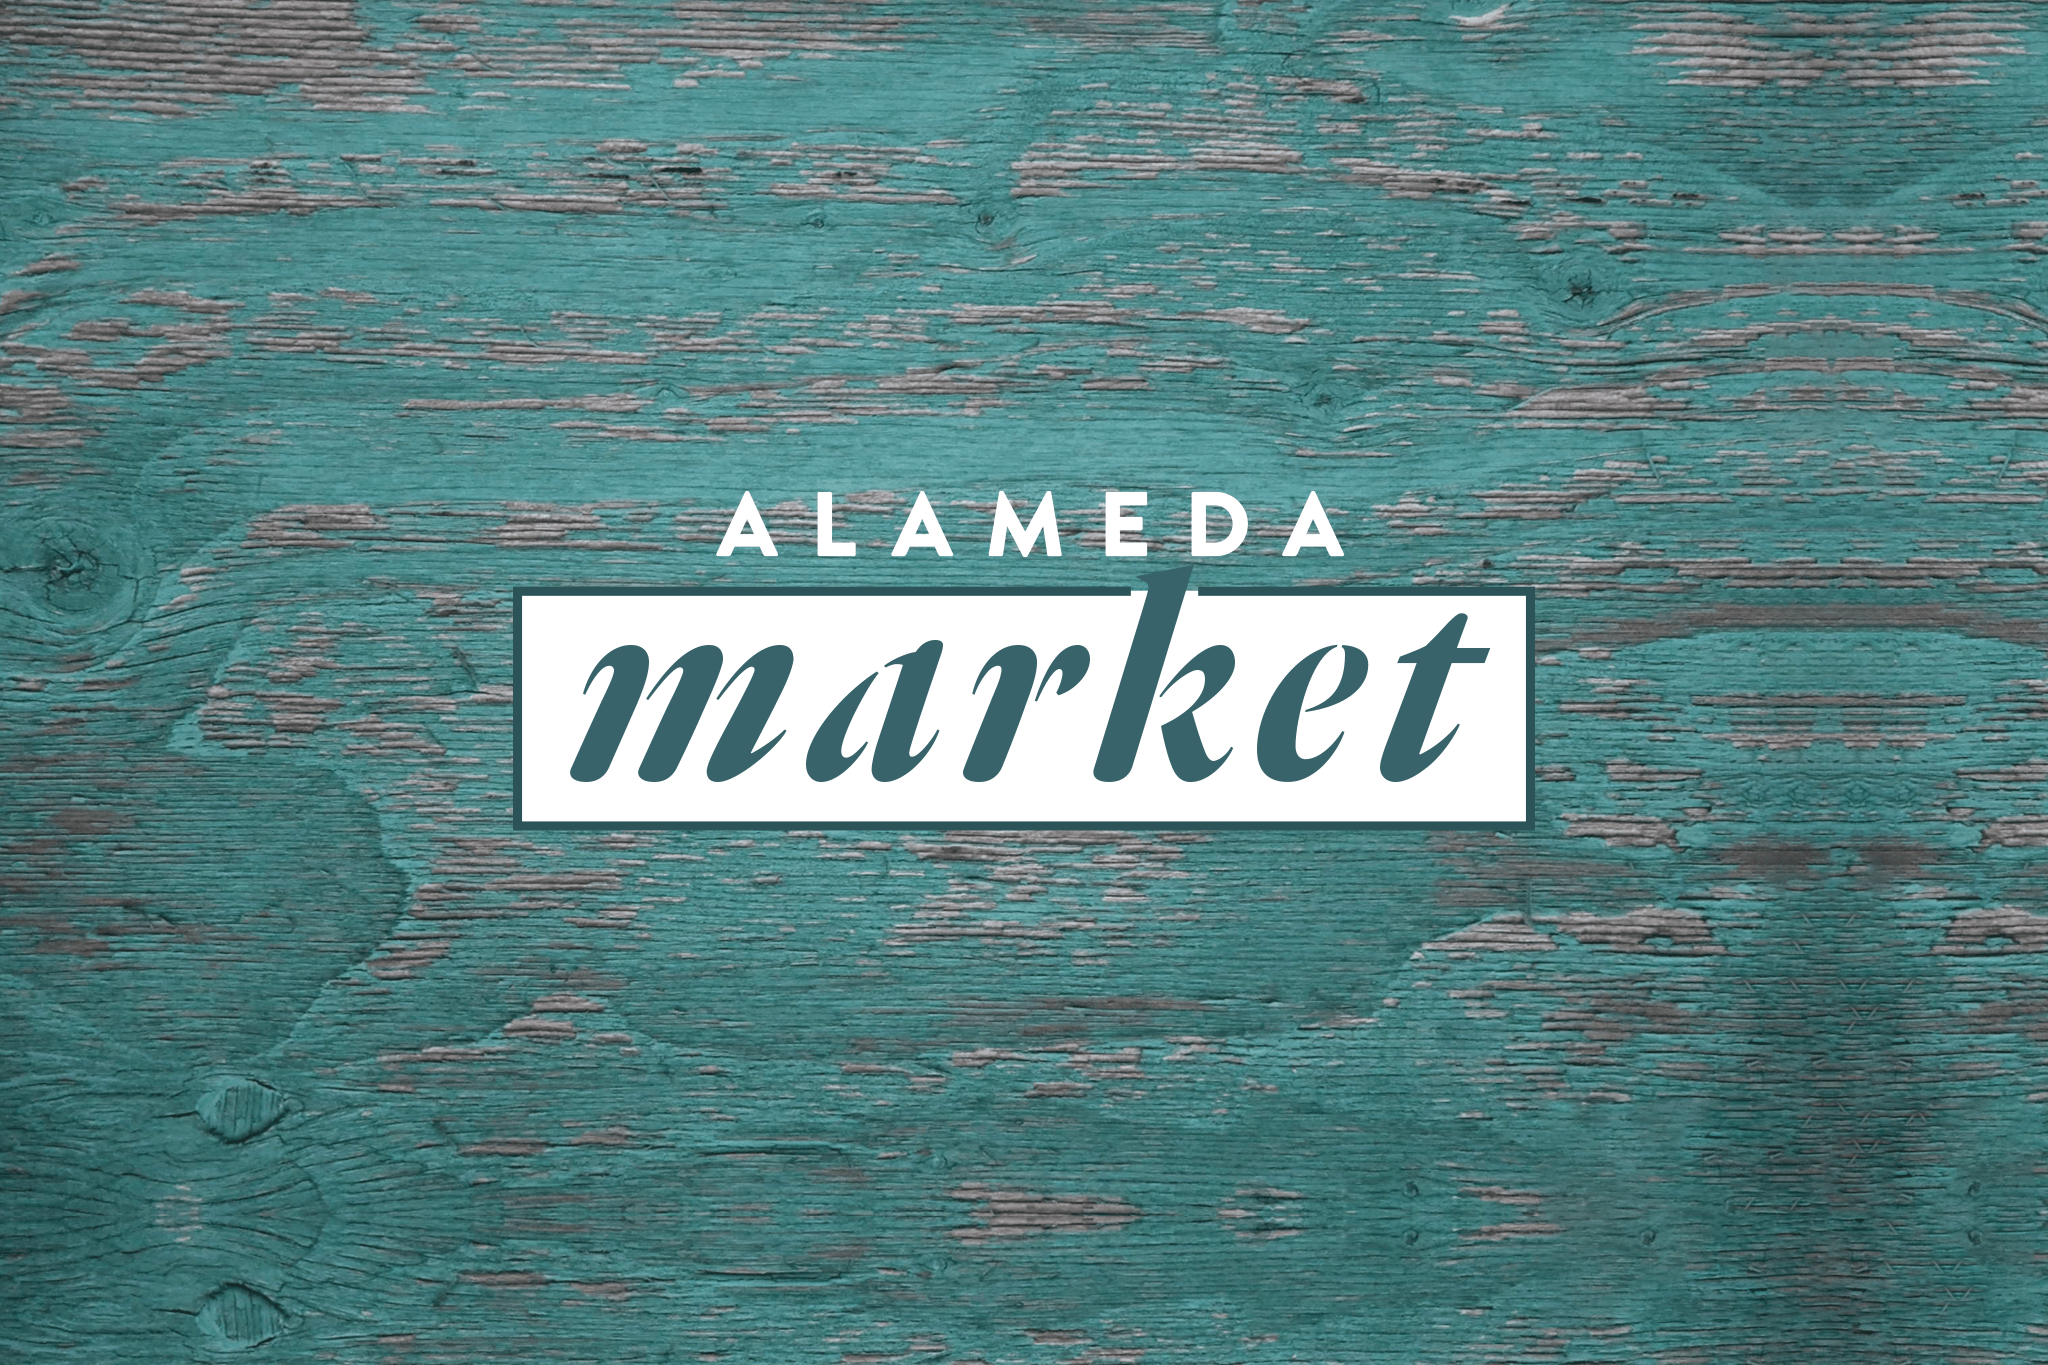 http://alamedamarket.pt/wp-content/uploads/2017/09/Alameda-Market.png